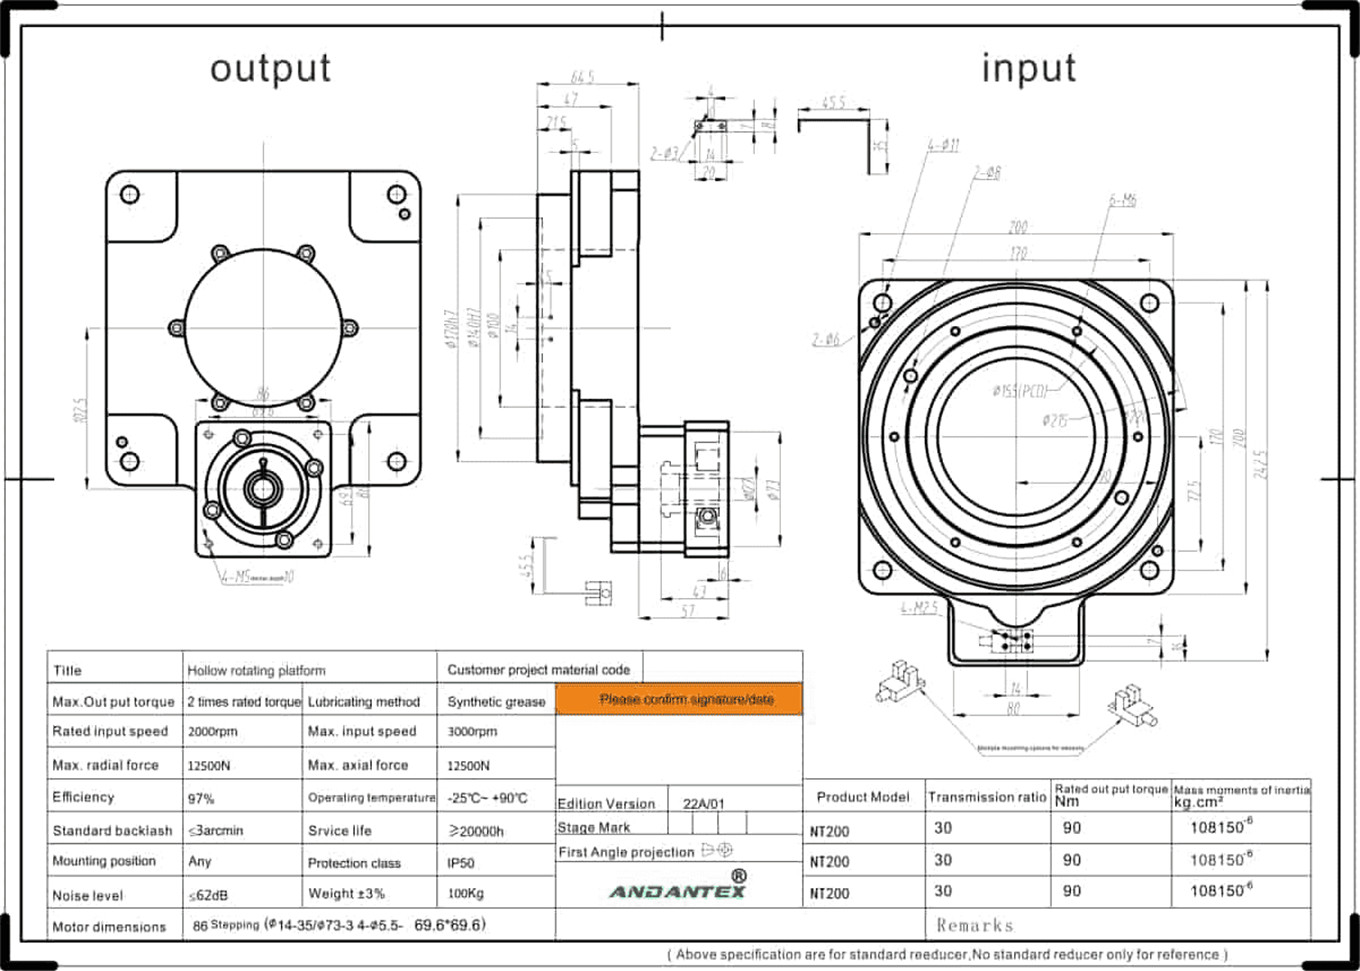 ANDANTEX NT200-10 šuplji rotacioni sto u mašini za lasersko rezanje pomoćna oprema aplikacija-01